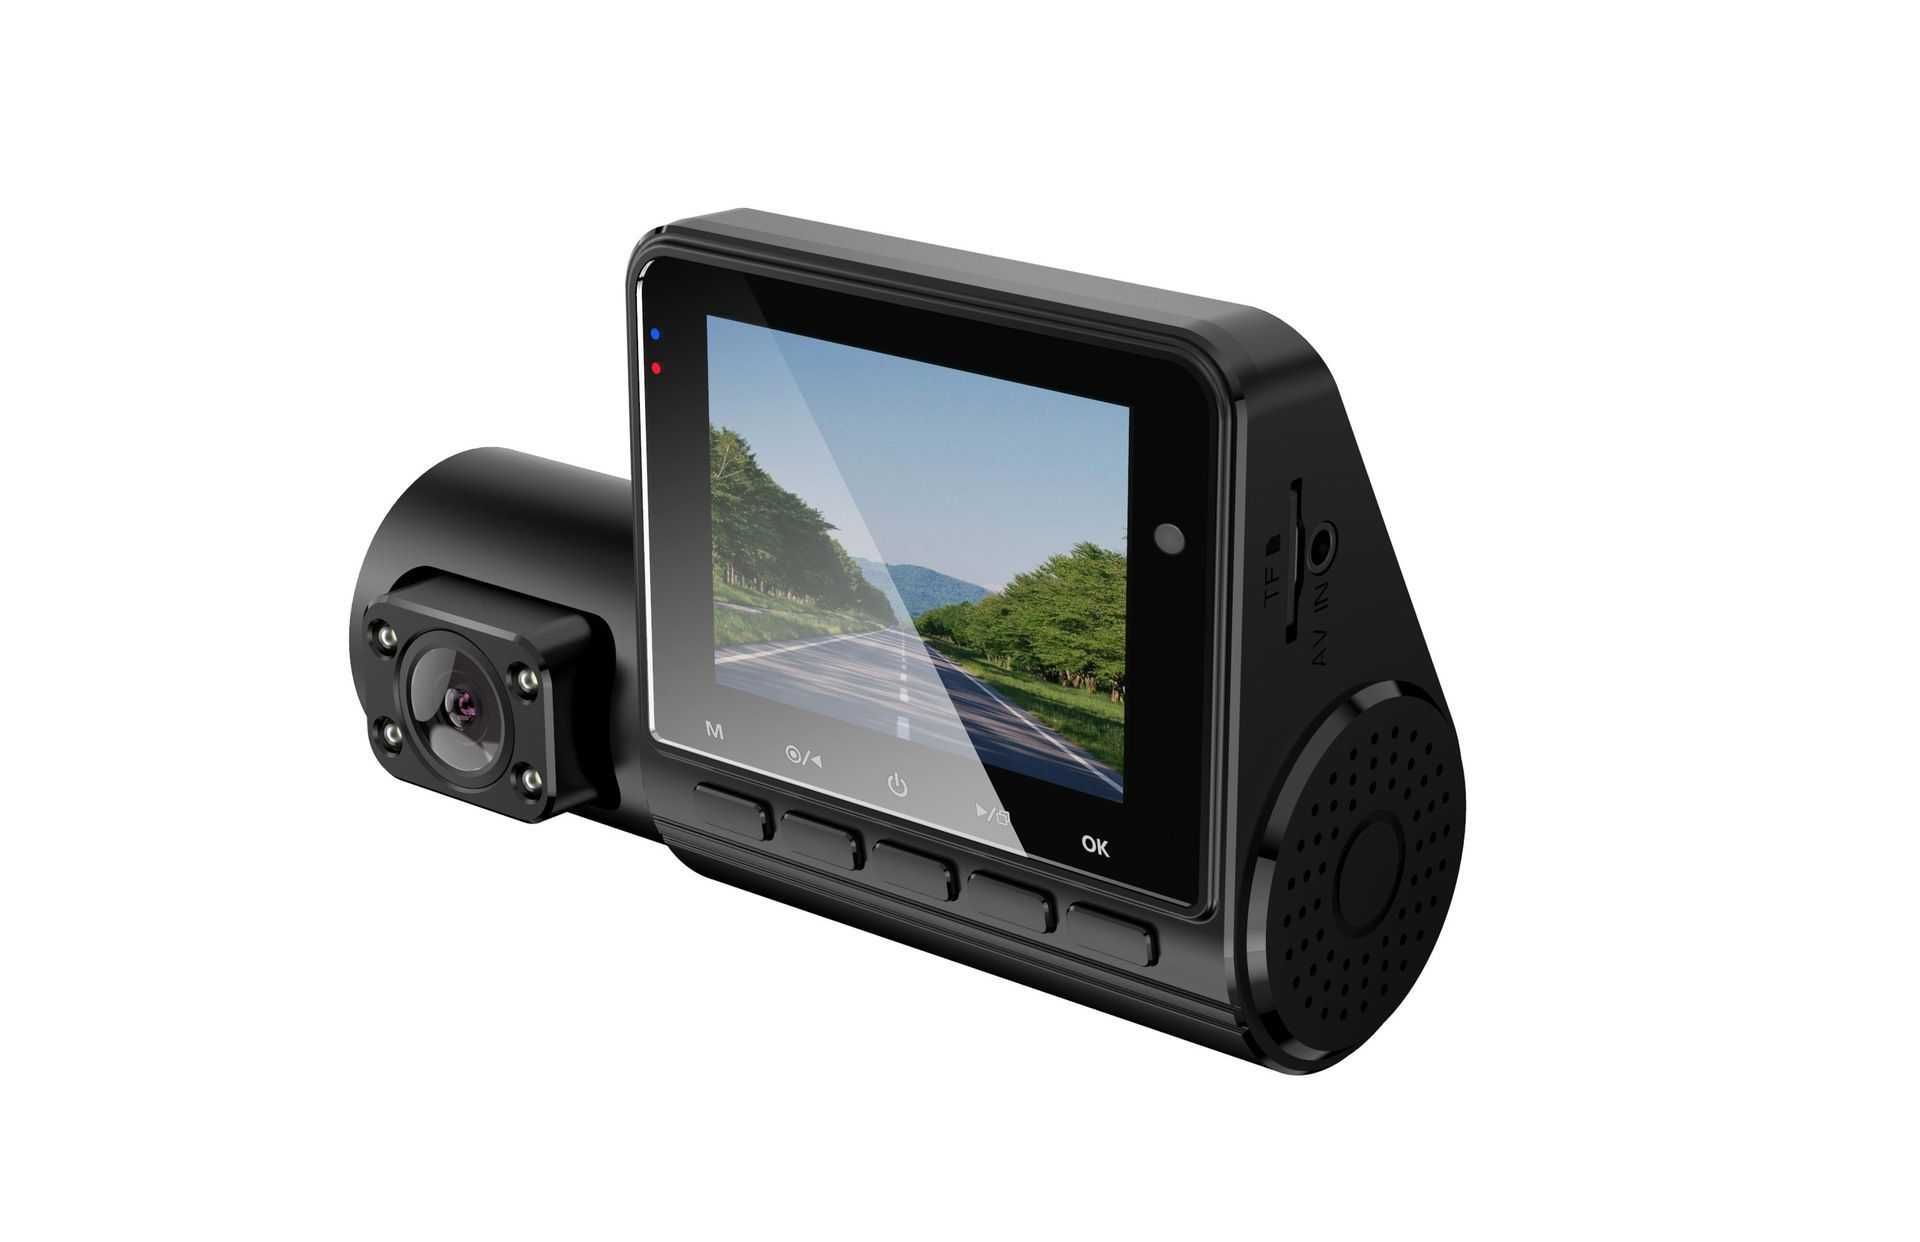 Автомобильный видеорегистратор с 3 тремя камерами Full HD